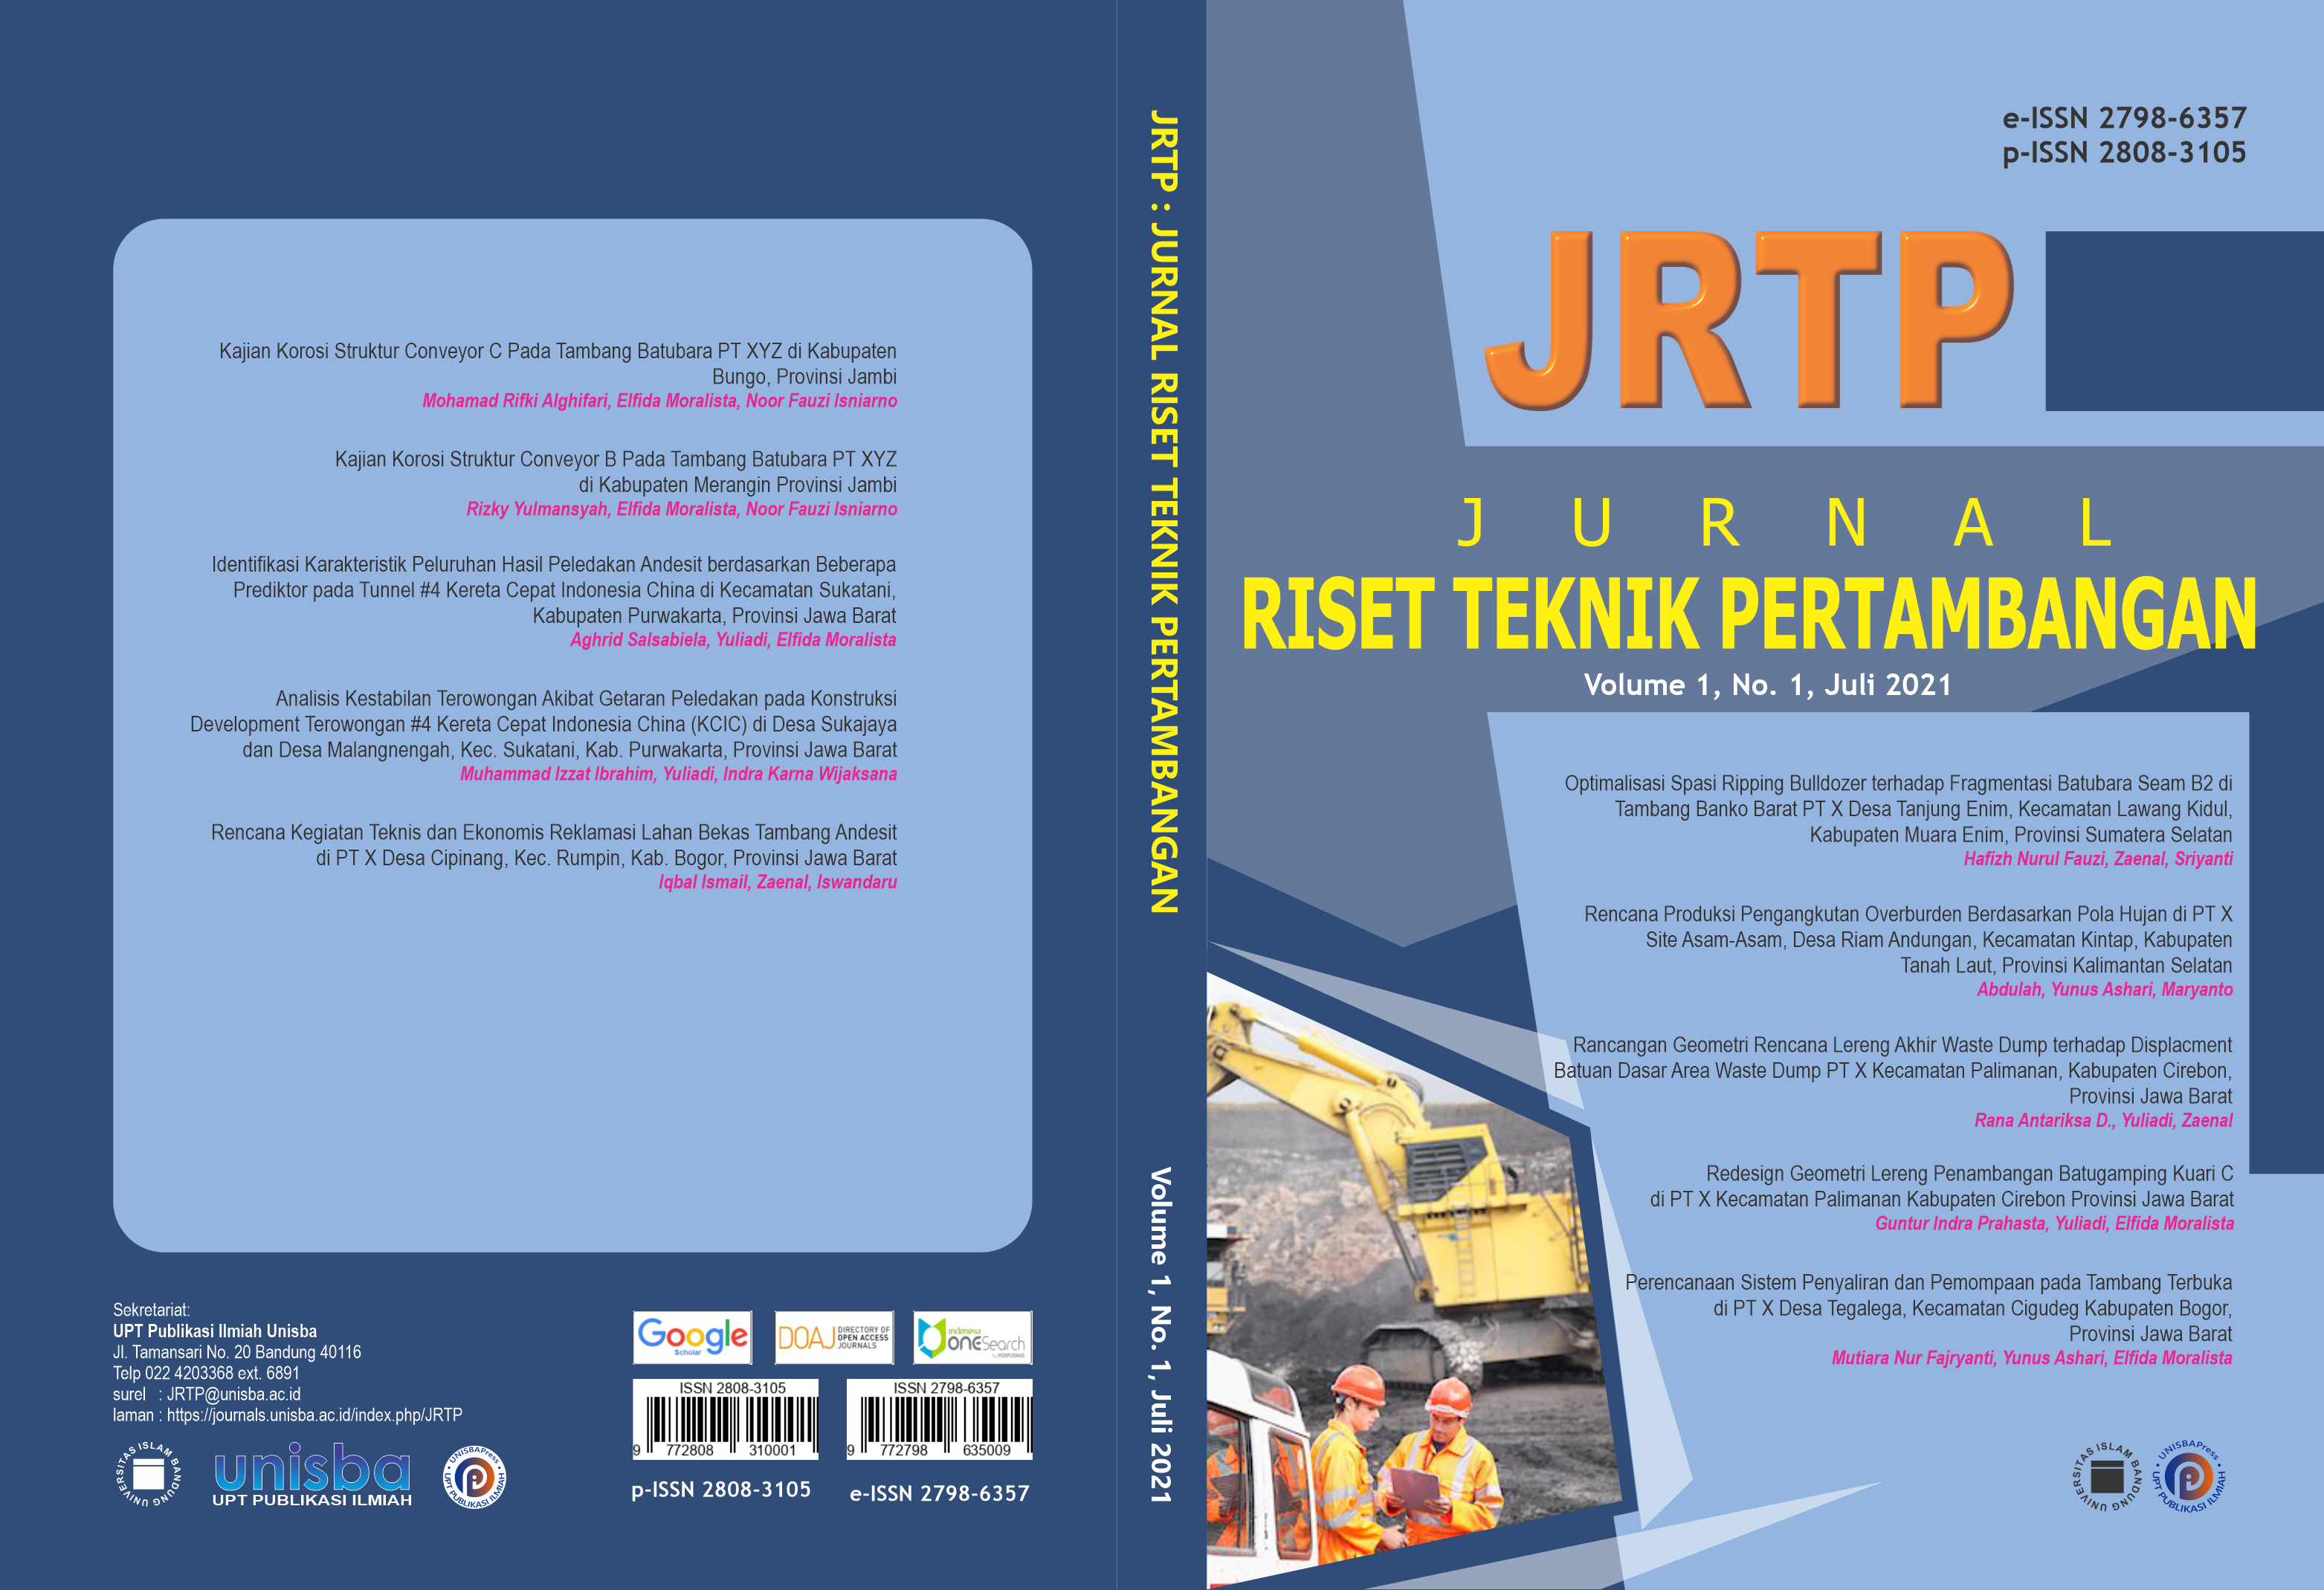 					View Volume 1, No. 1, Juli 2021, Jurnal Riset Teknik Pertambangan (JRTP)
				